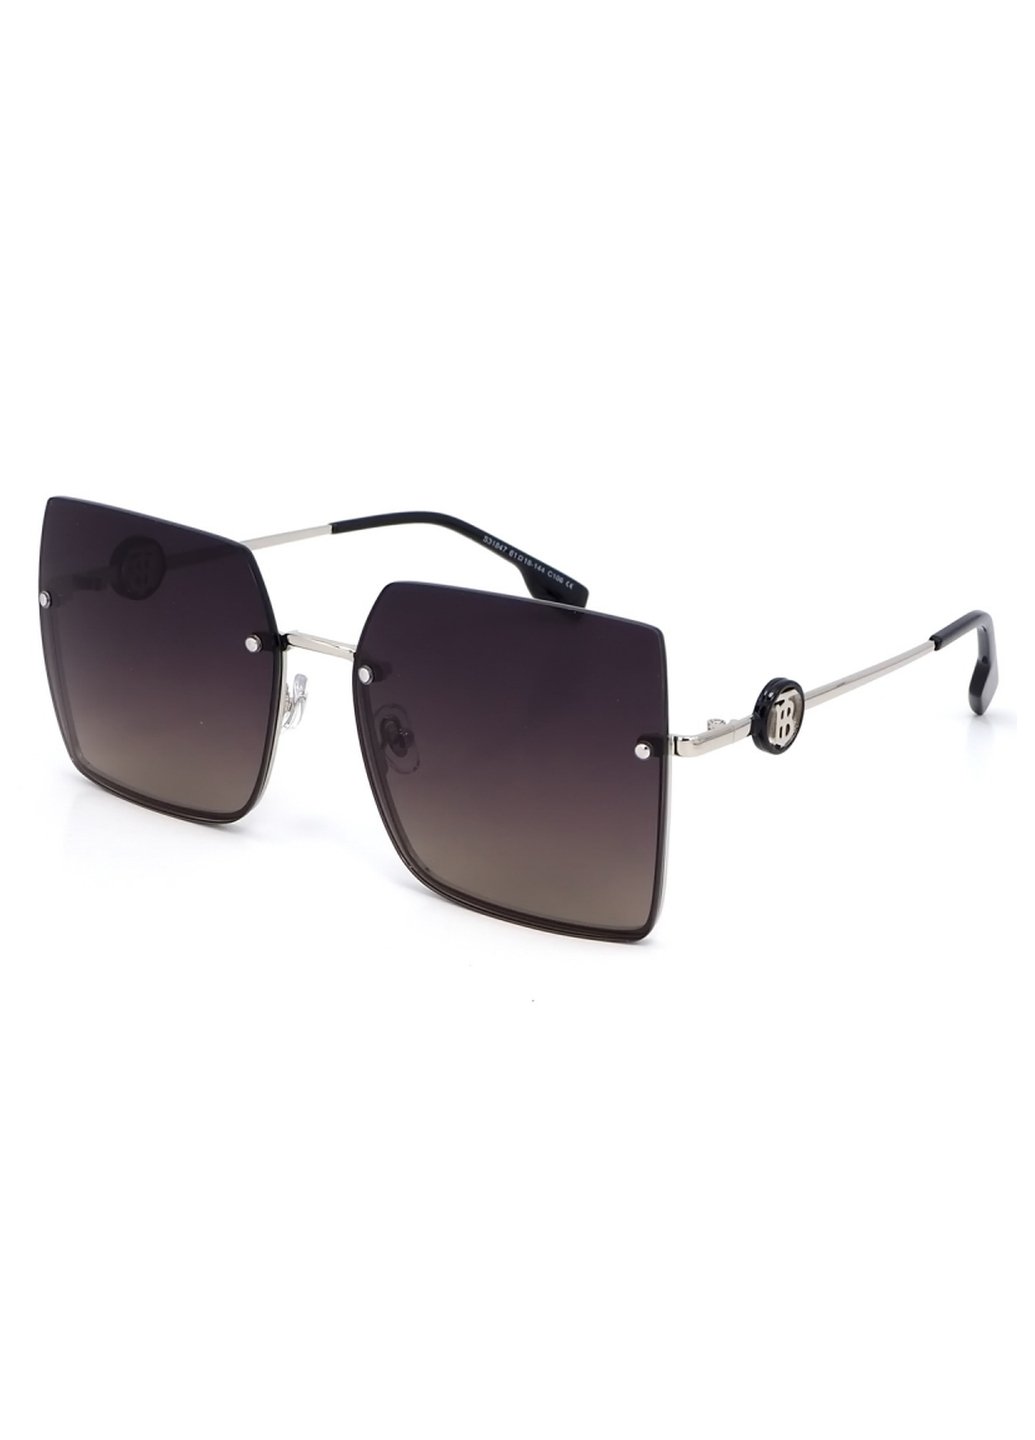 Купить Женские солнцезащитные очки Merlini с поляризацией S31847 117119 - Серый в интернет-магазине